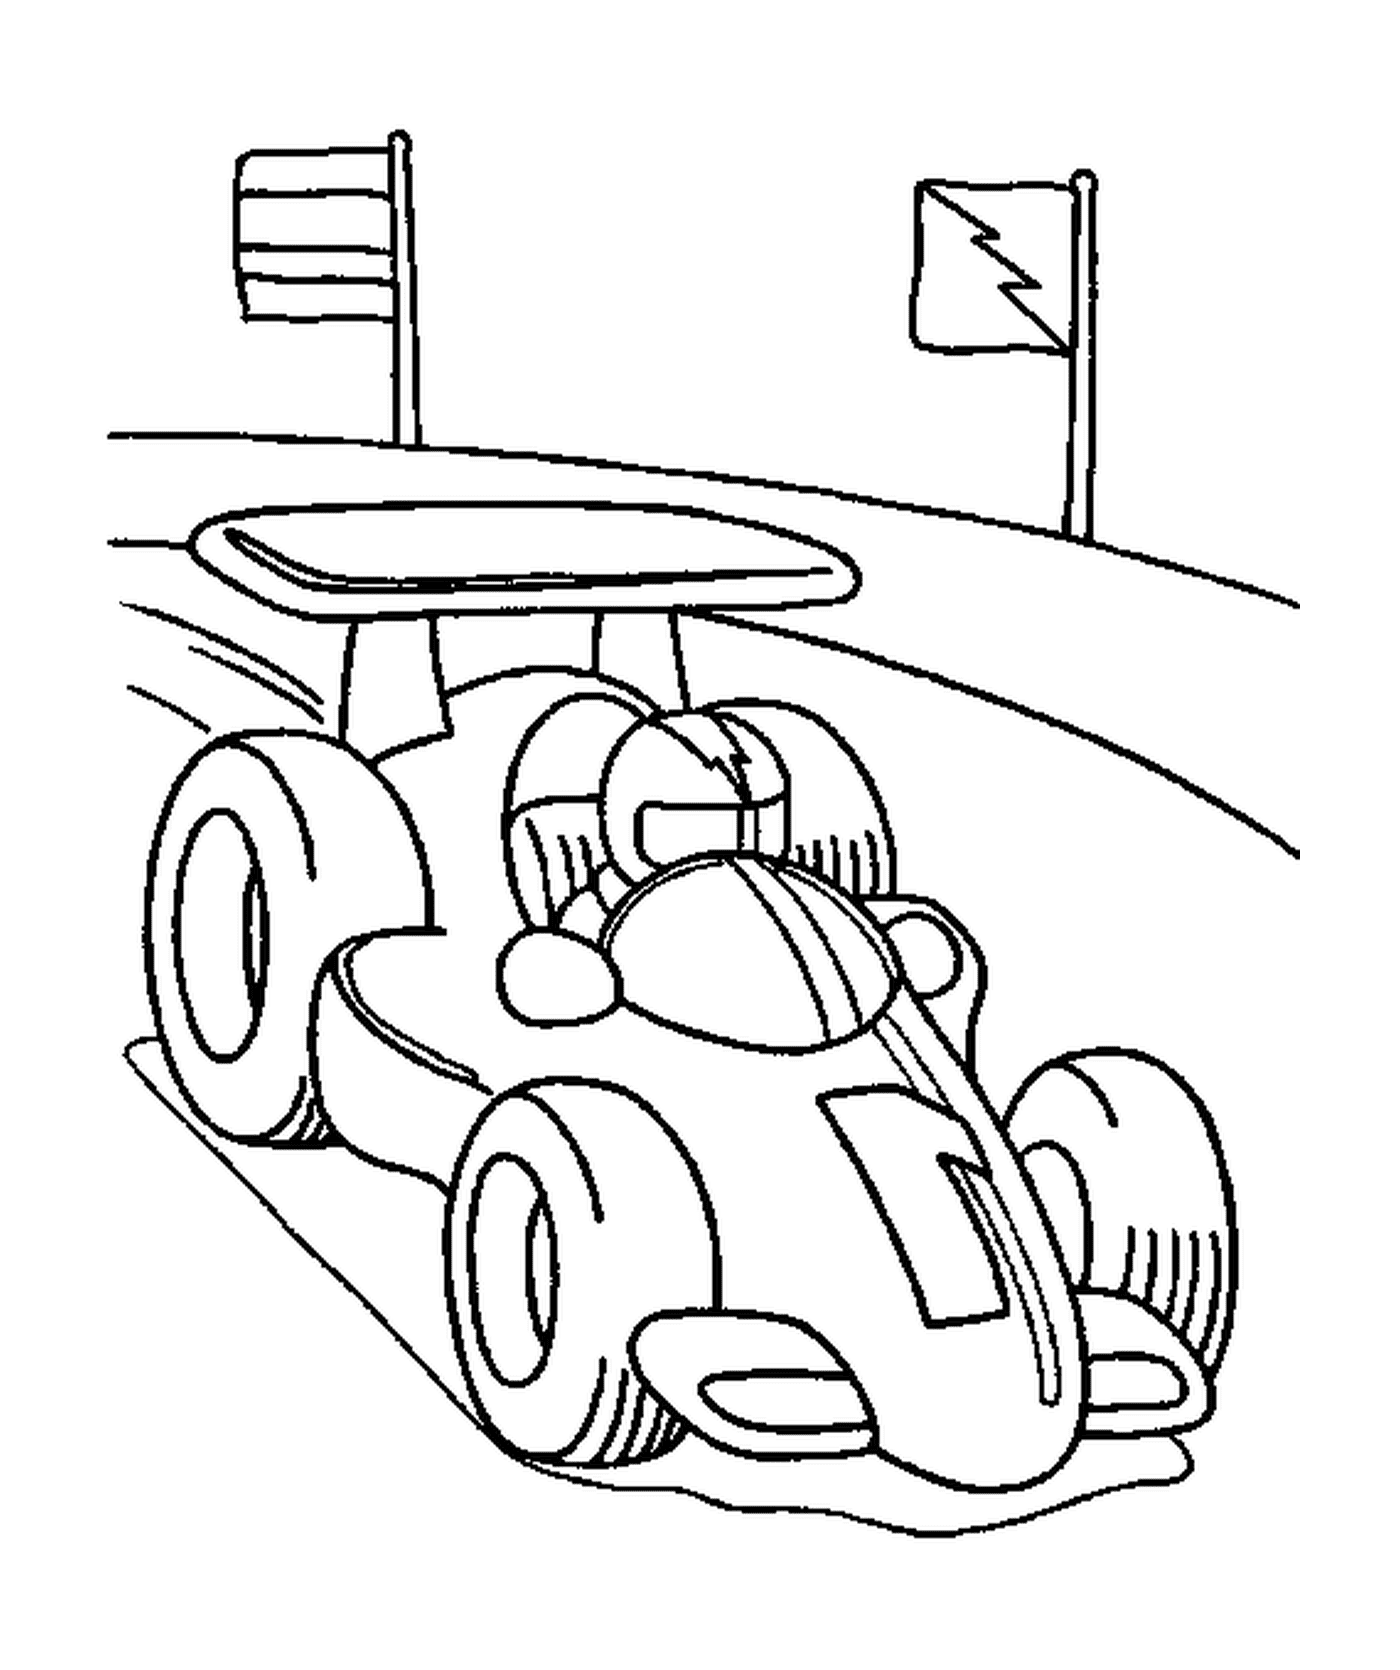  Fahrzeug der Formel 1 